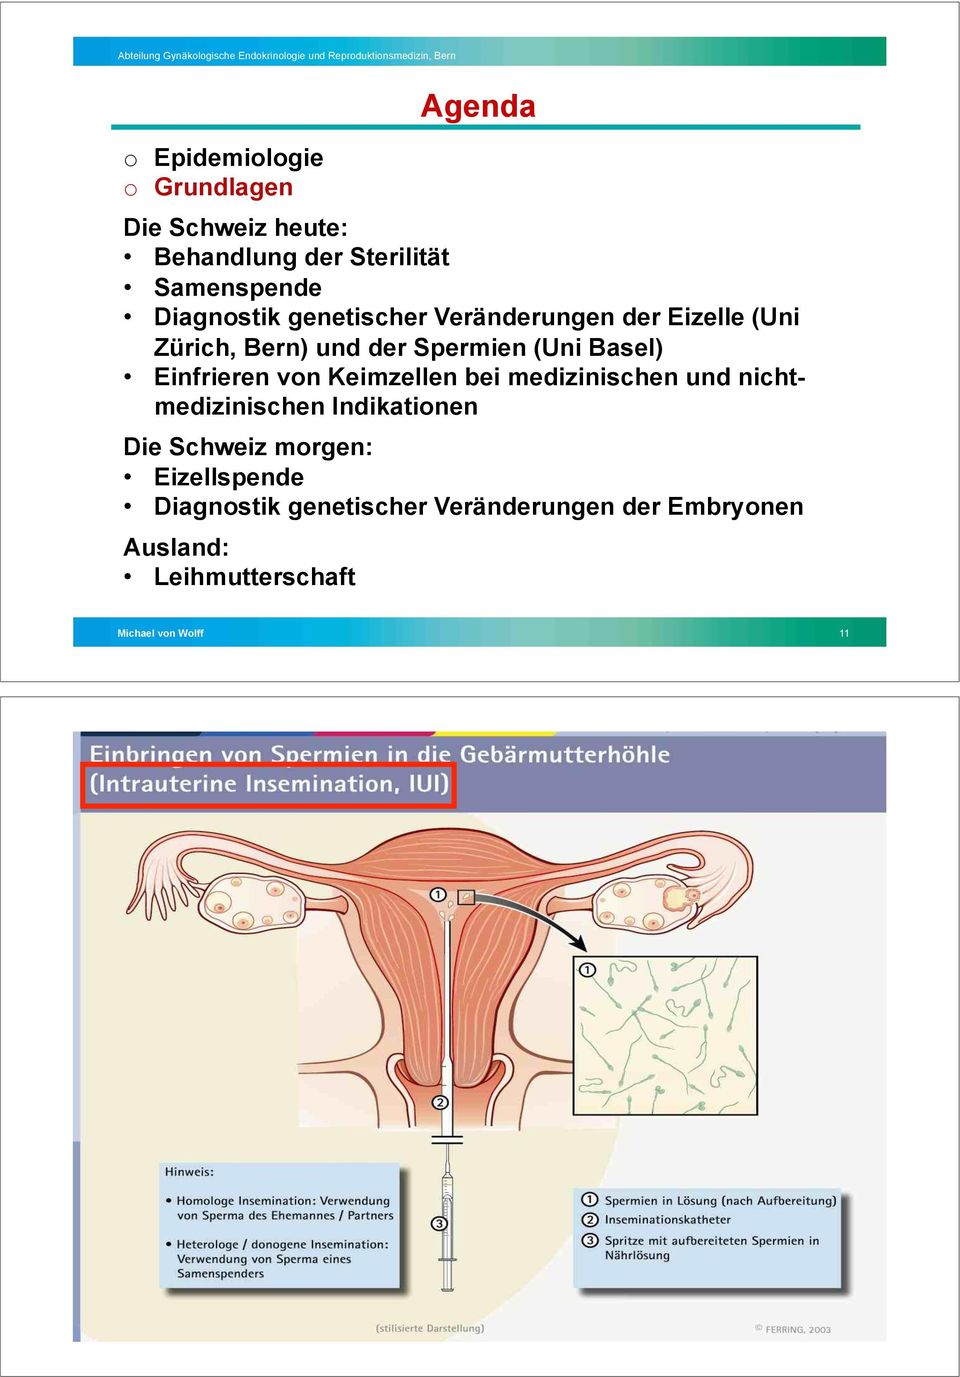 Keimzellen bei medizinischen und nichtmedizinischen Indikationen Die Schweiz morgen: Eizellspende